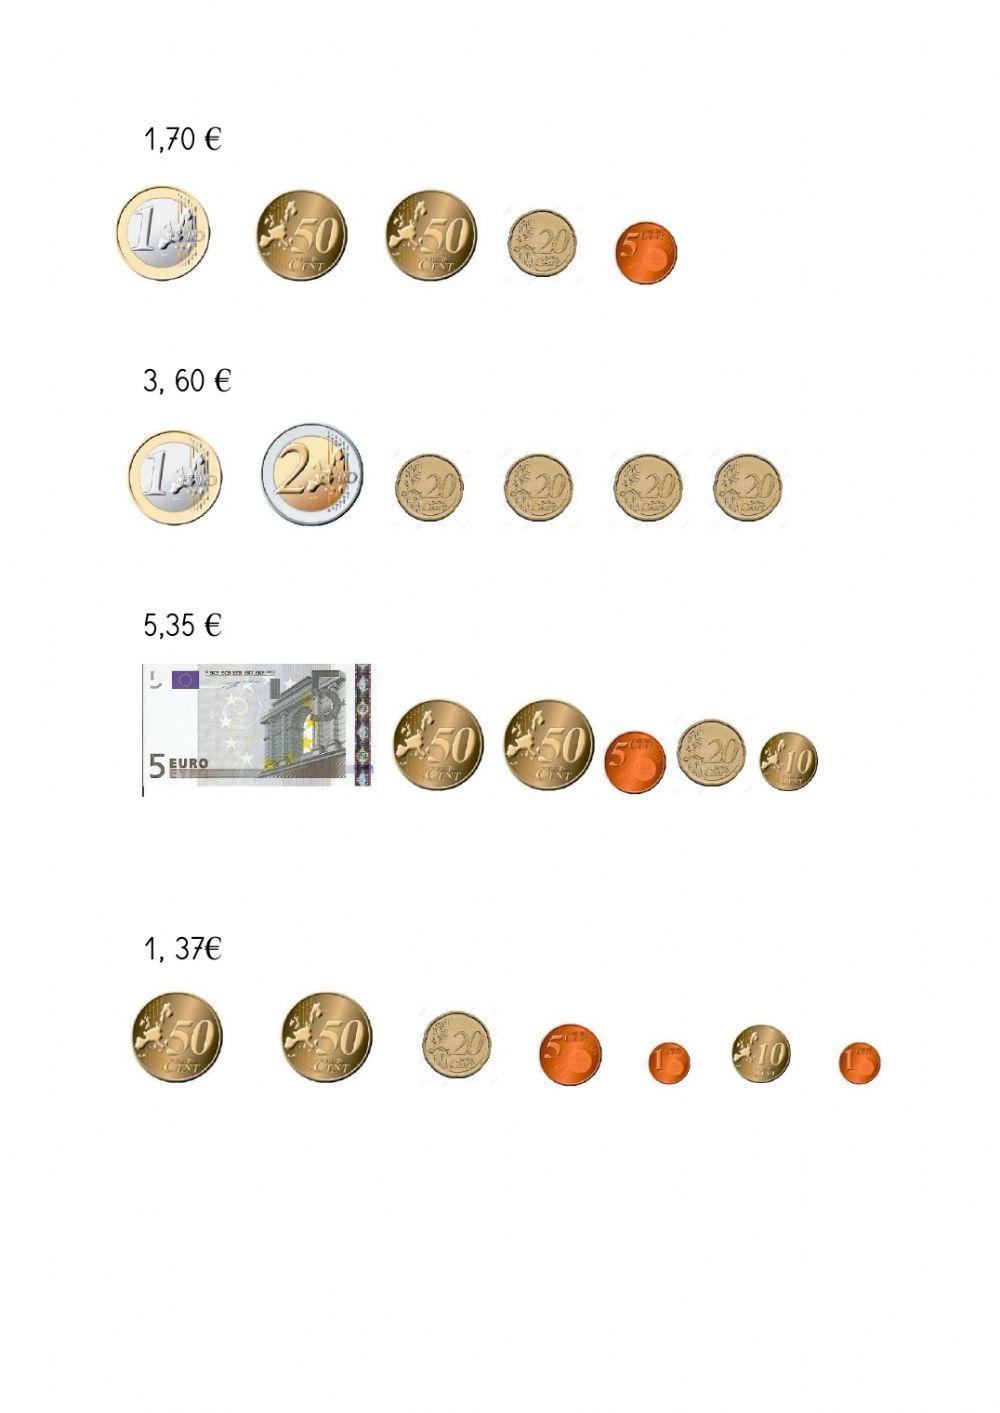 Monedas